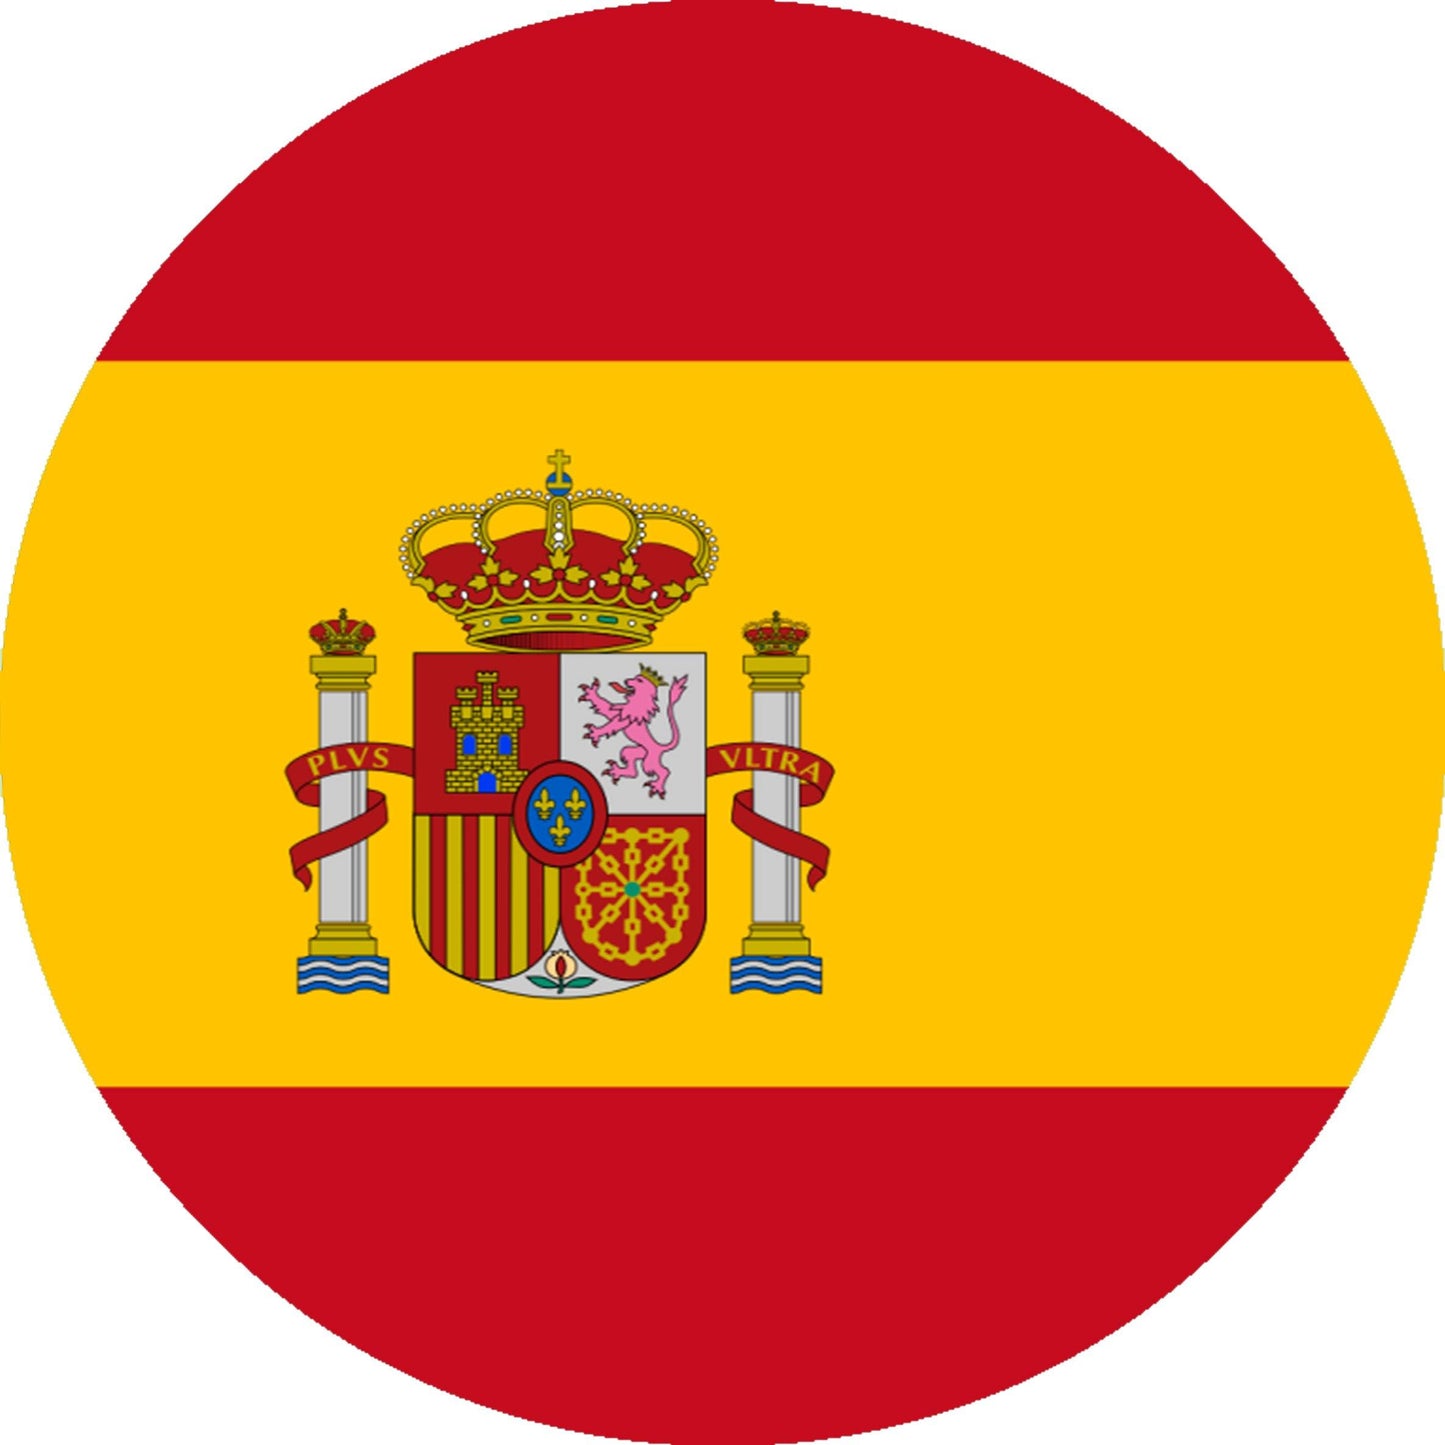 Tortenaufleger Spanien - Tolle-Tortenaufleger